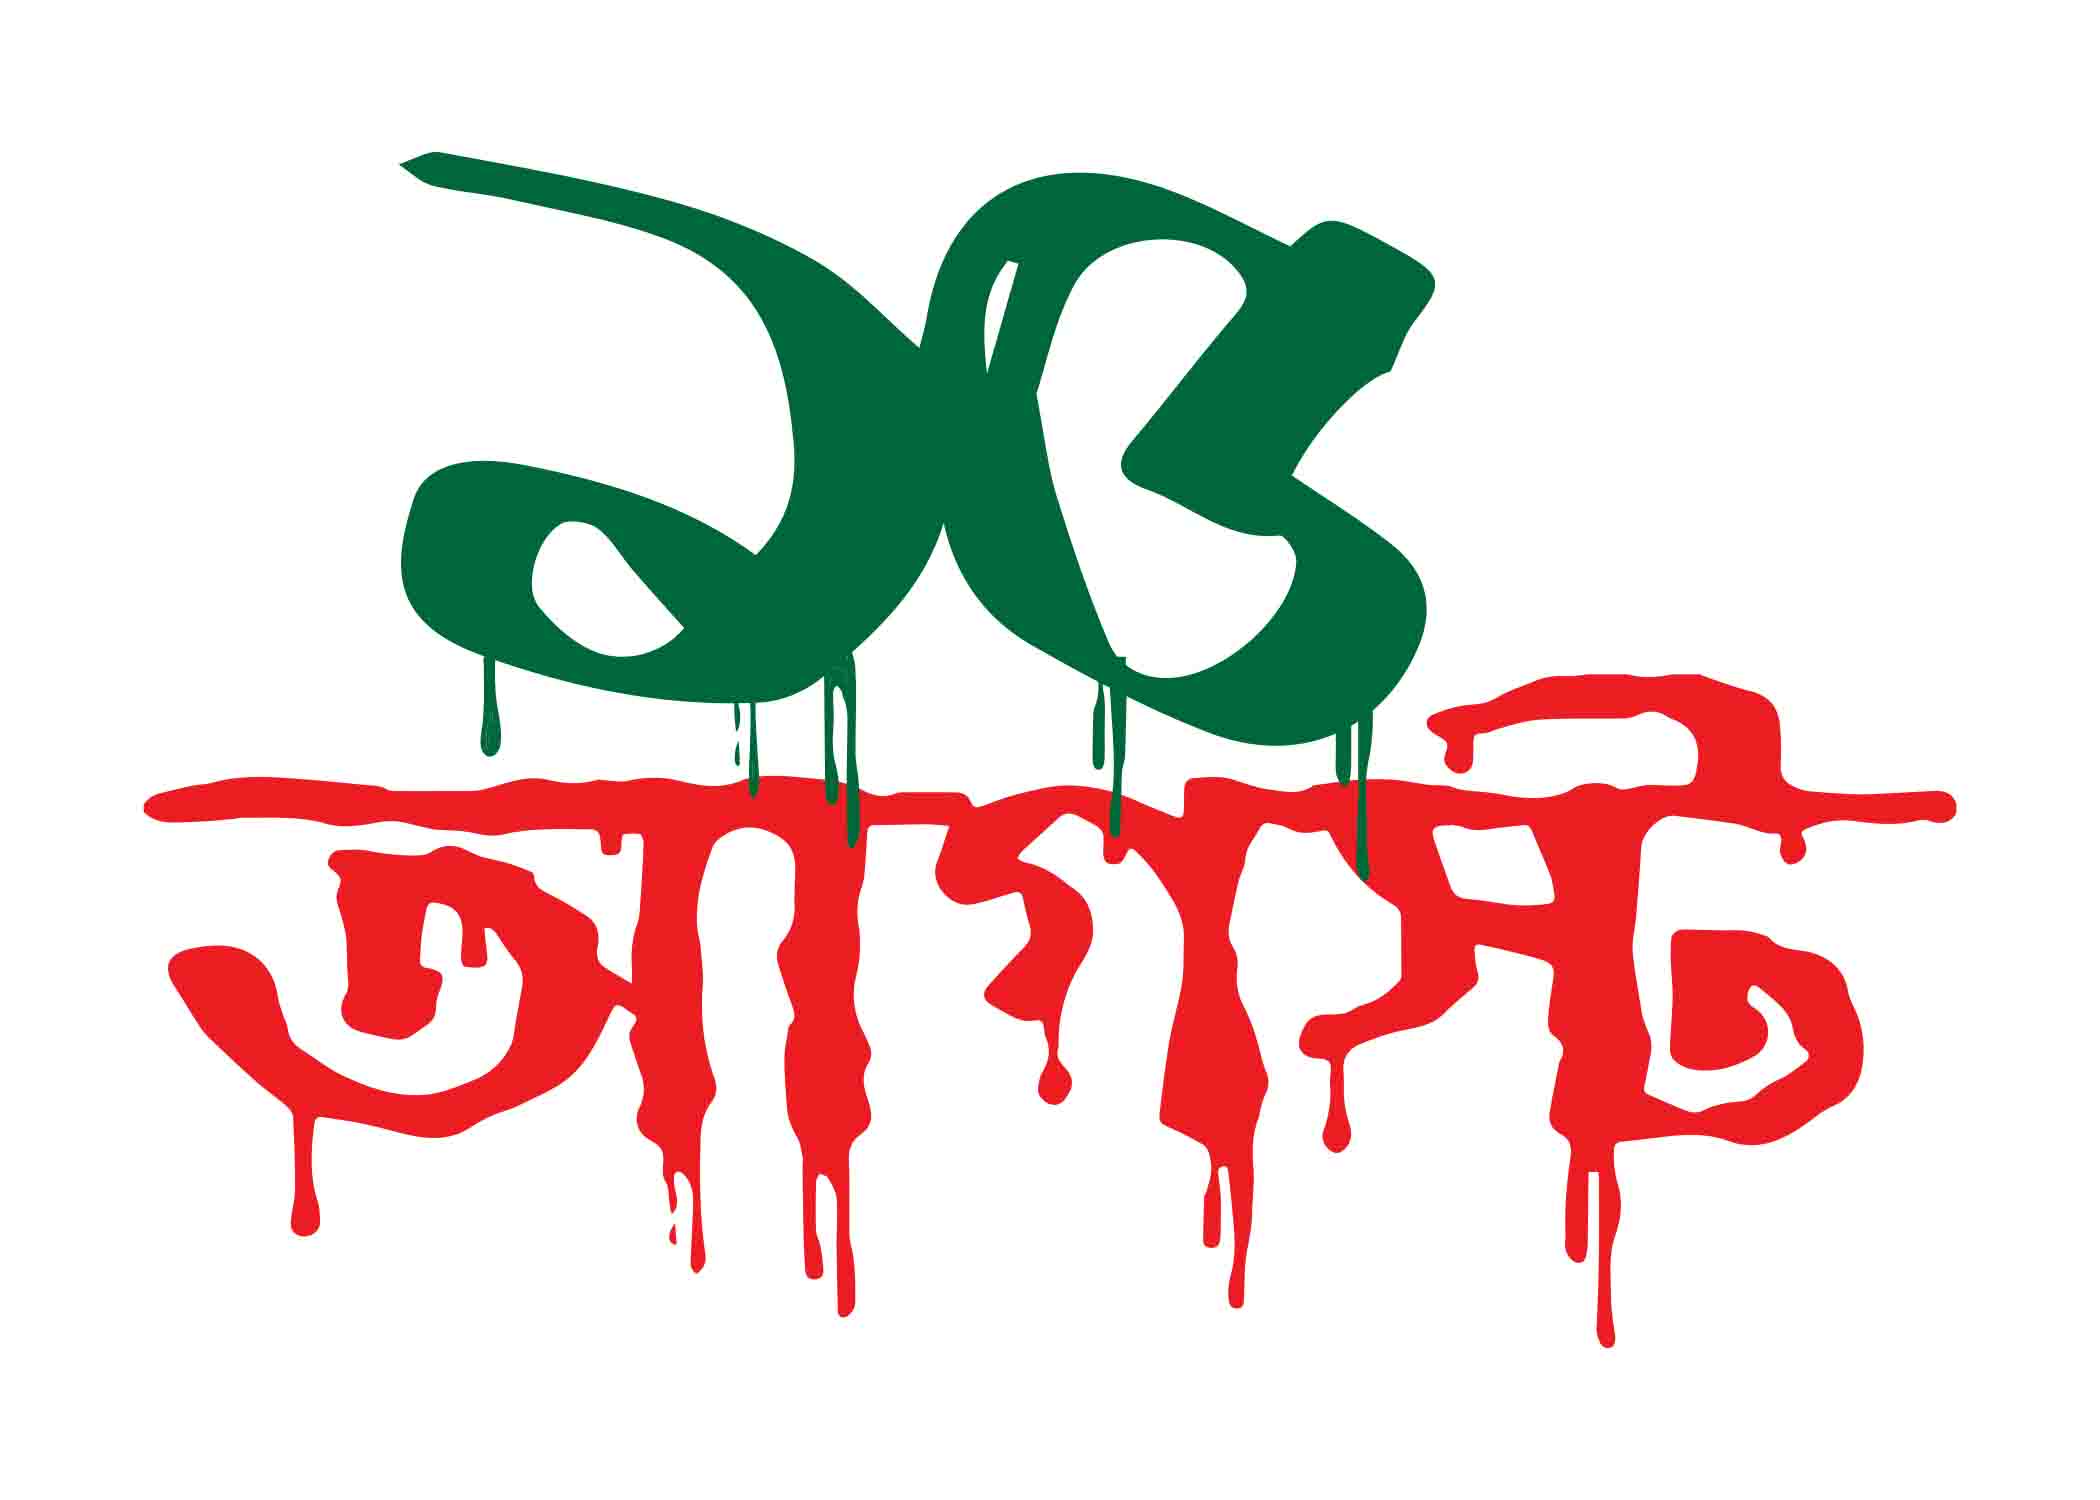 ১৫ আগাস্ট টাইপোগ্রাফি । Bangla Typography PNG